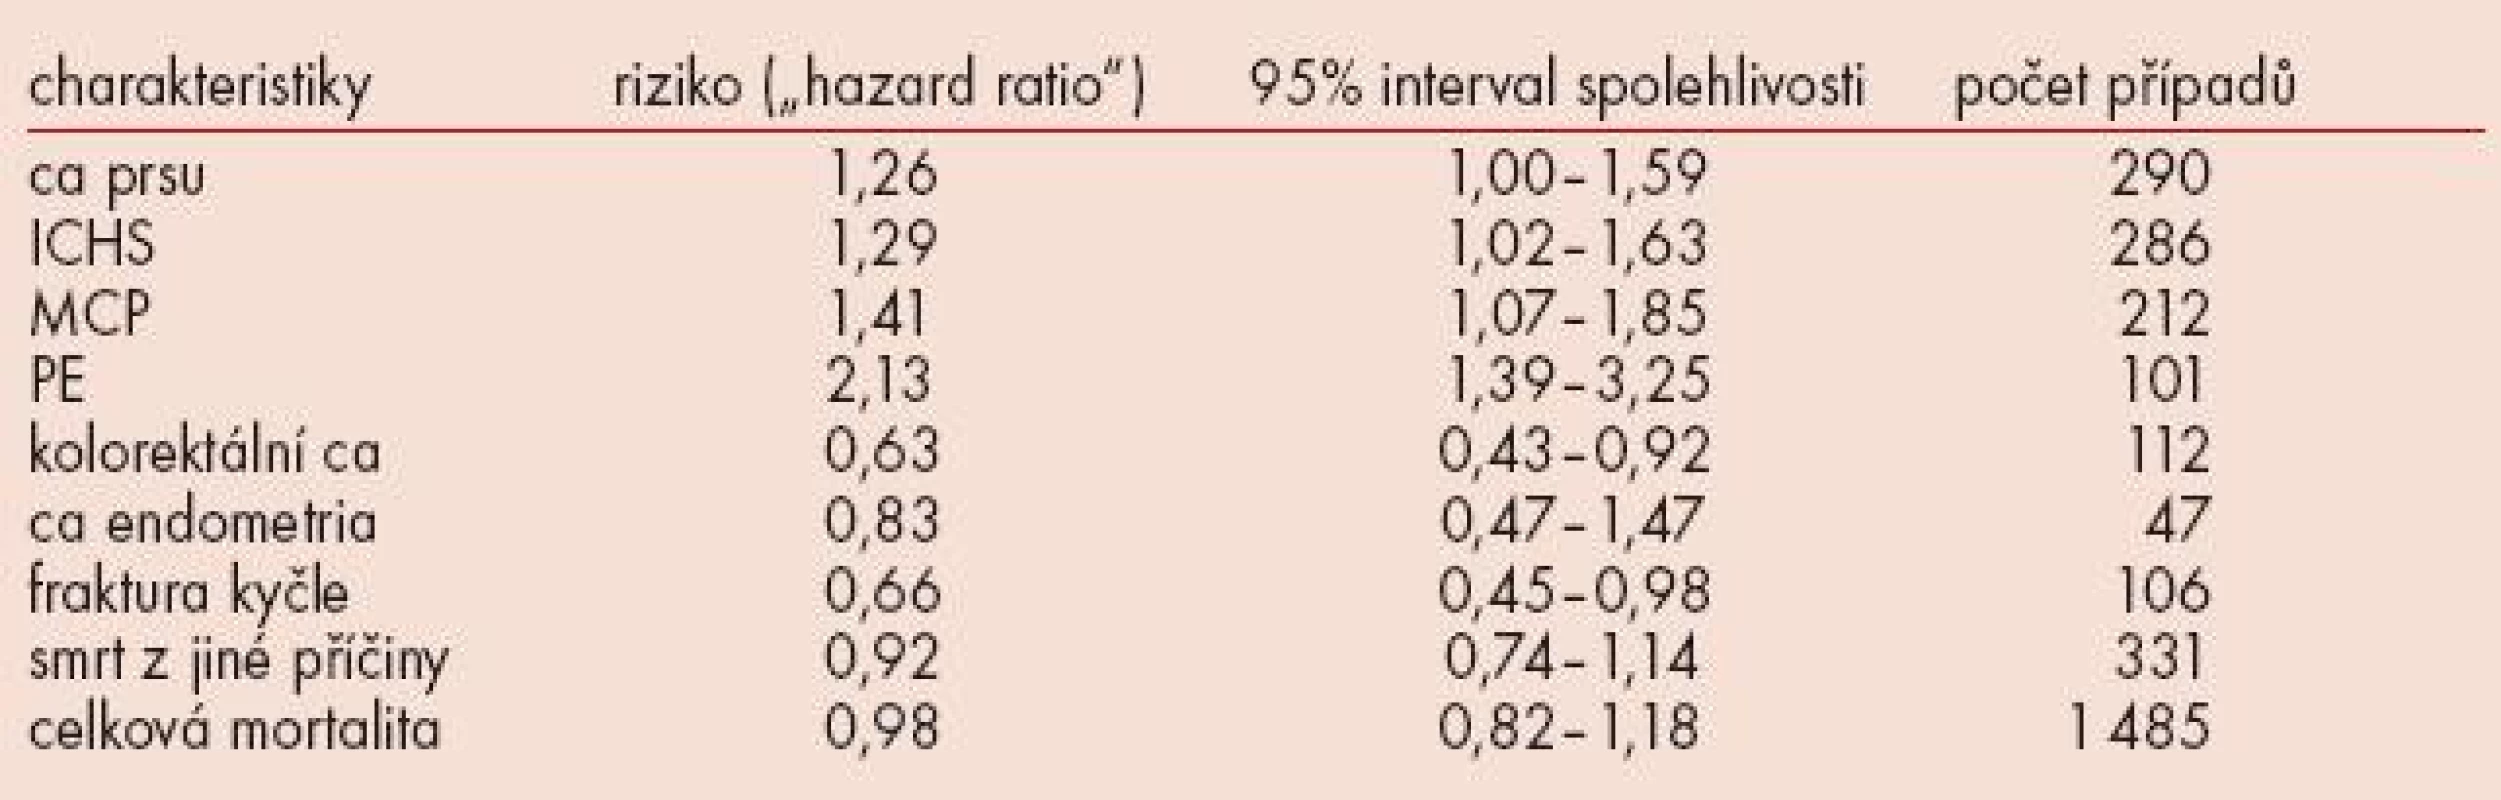 Charakteristiky souboru, rizik (tzv. „hazard ratio“).